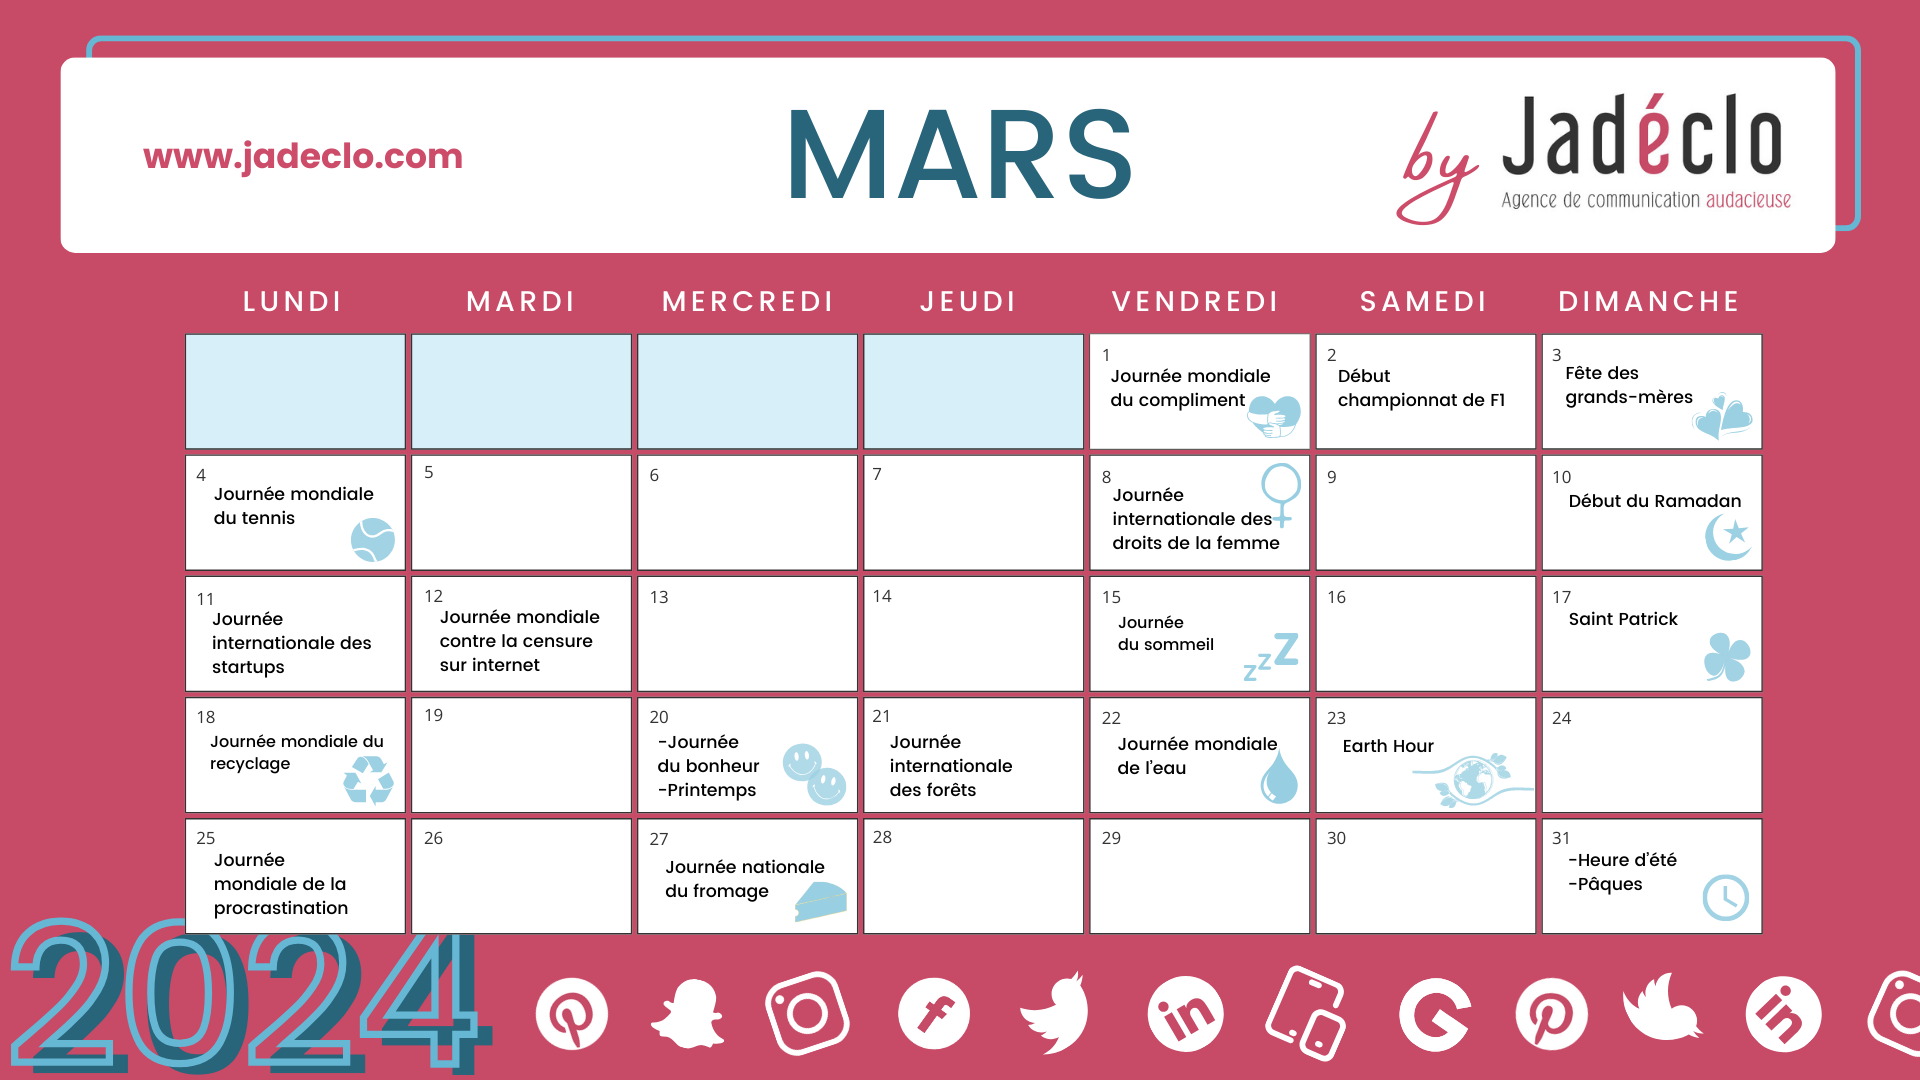 Retrouvez tous les événements clés du mois de mars grâce à votre calendrier marronnier mars 2024 !